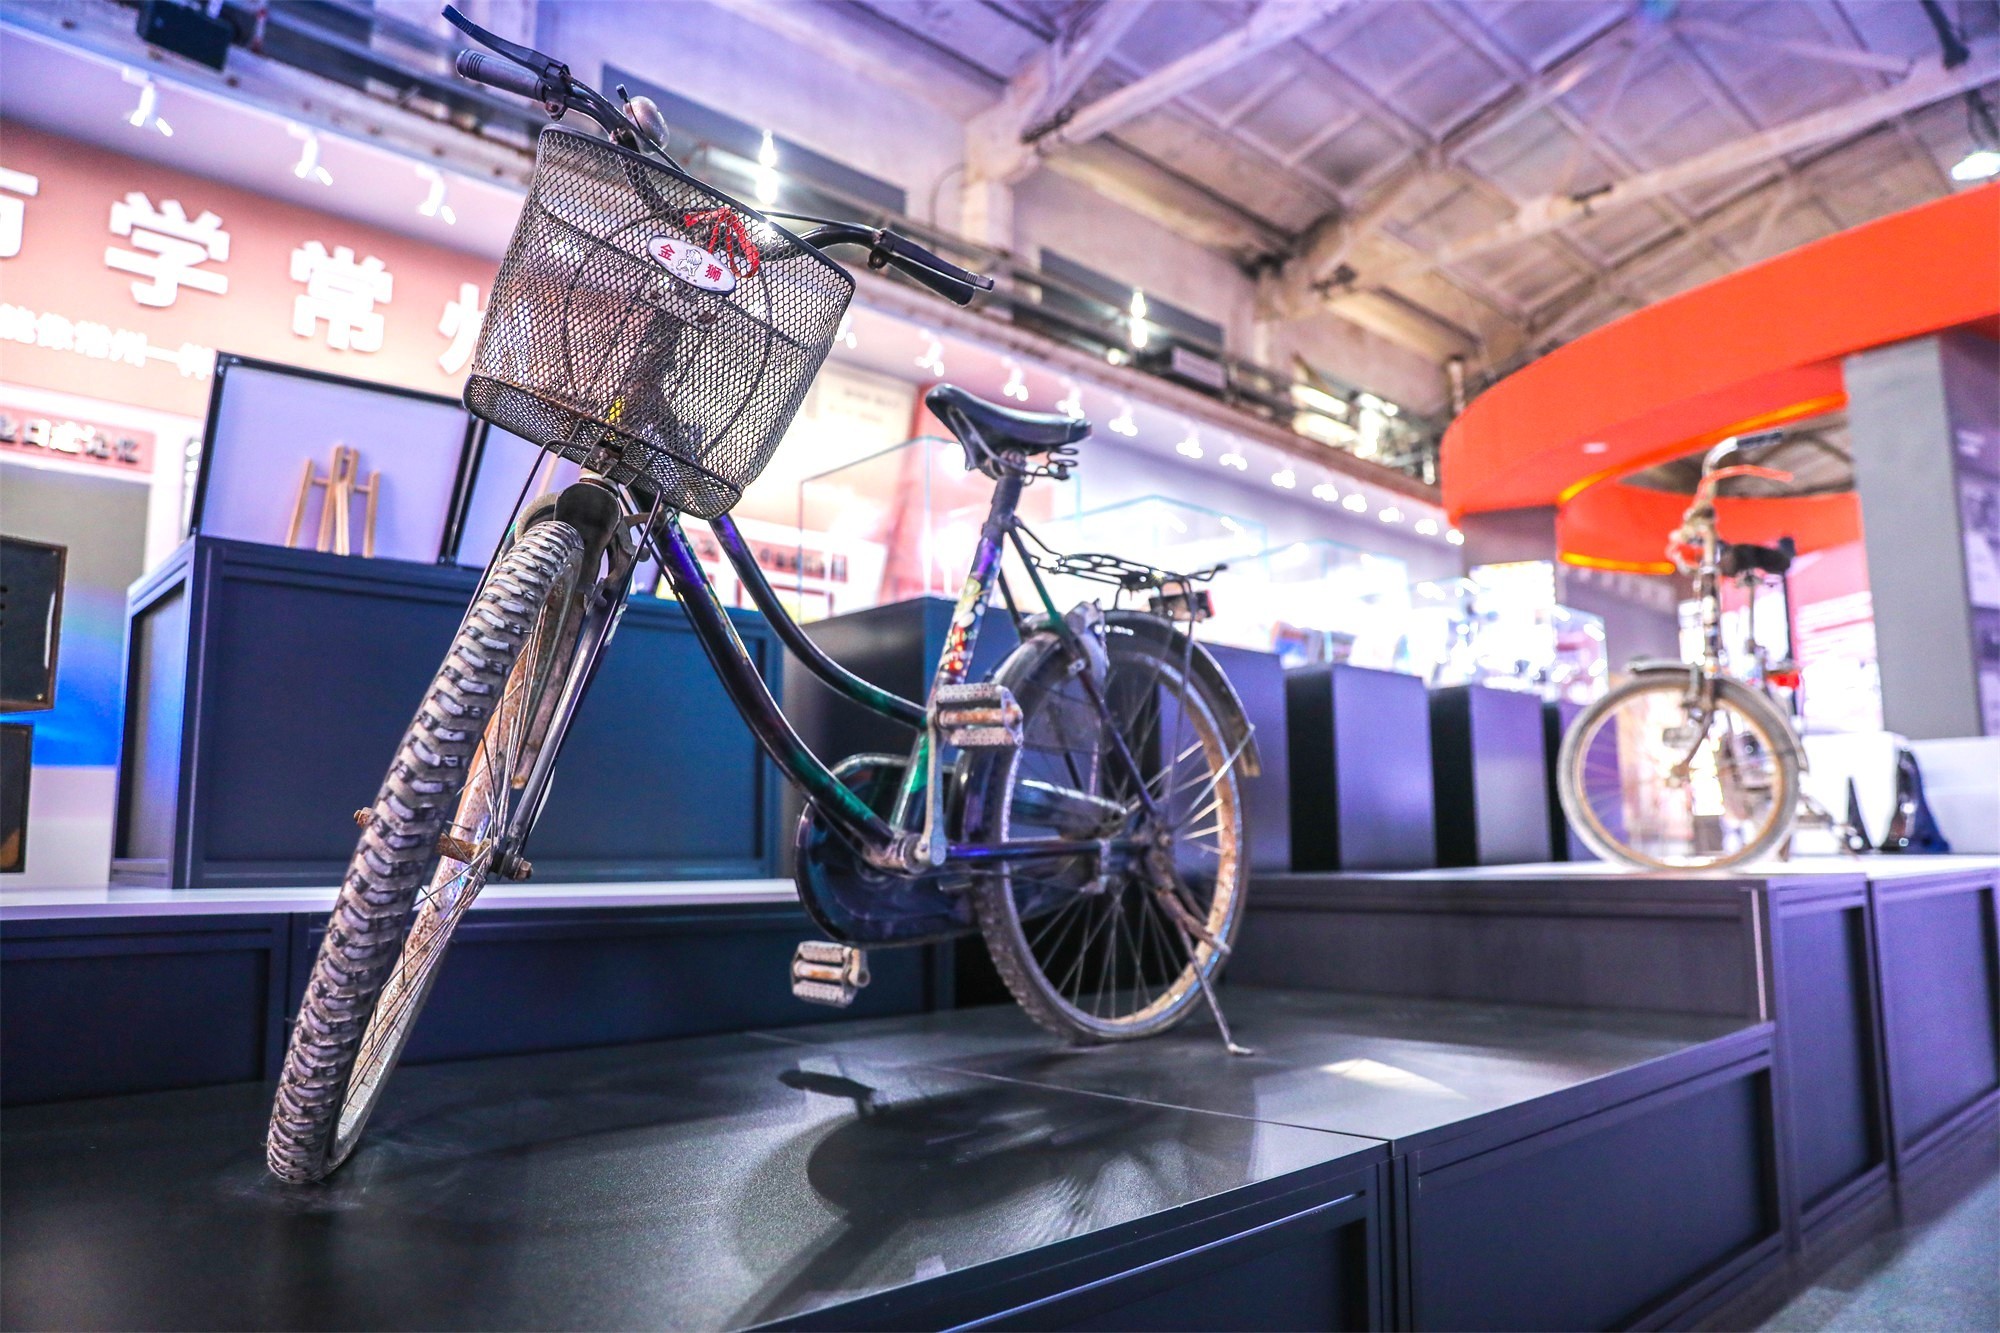 展览馆内陈列的金狮自行车